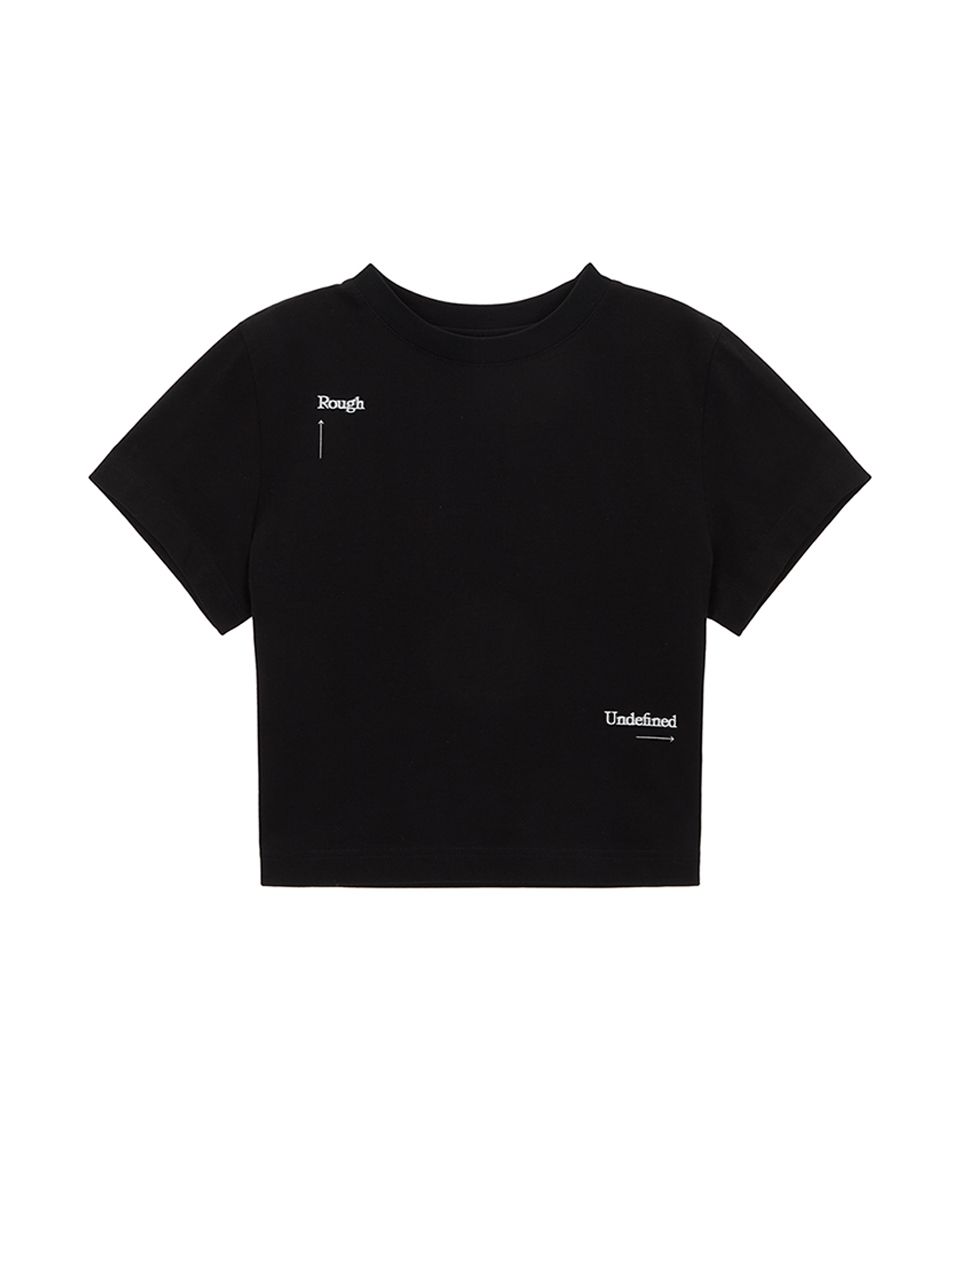 마뗑킴(MATIN KIM) 반소매 티셔츠 | 무신사 추천 브랜드